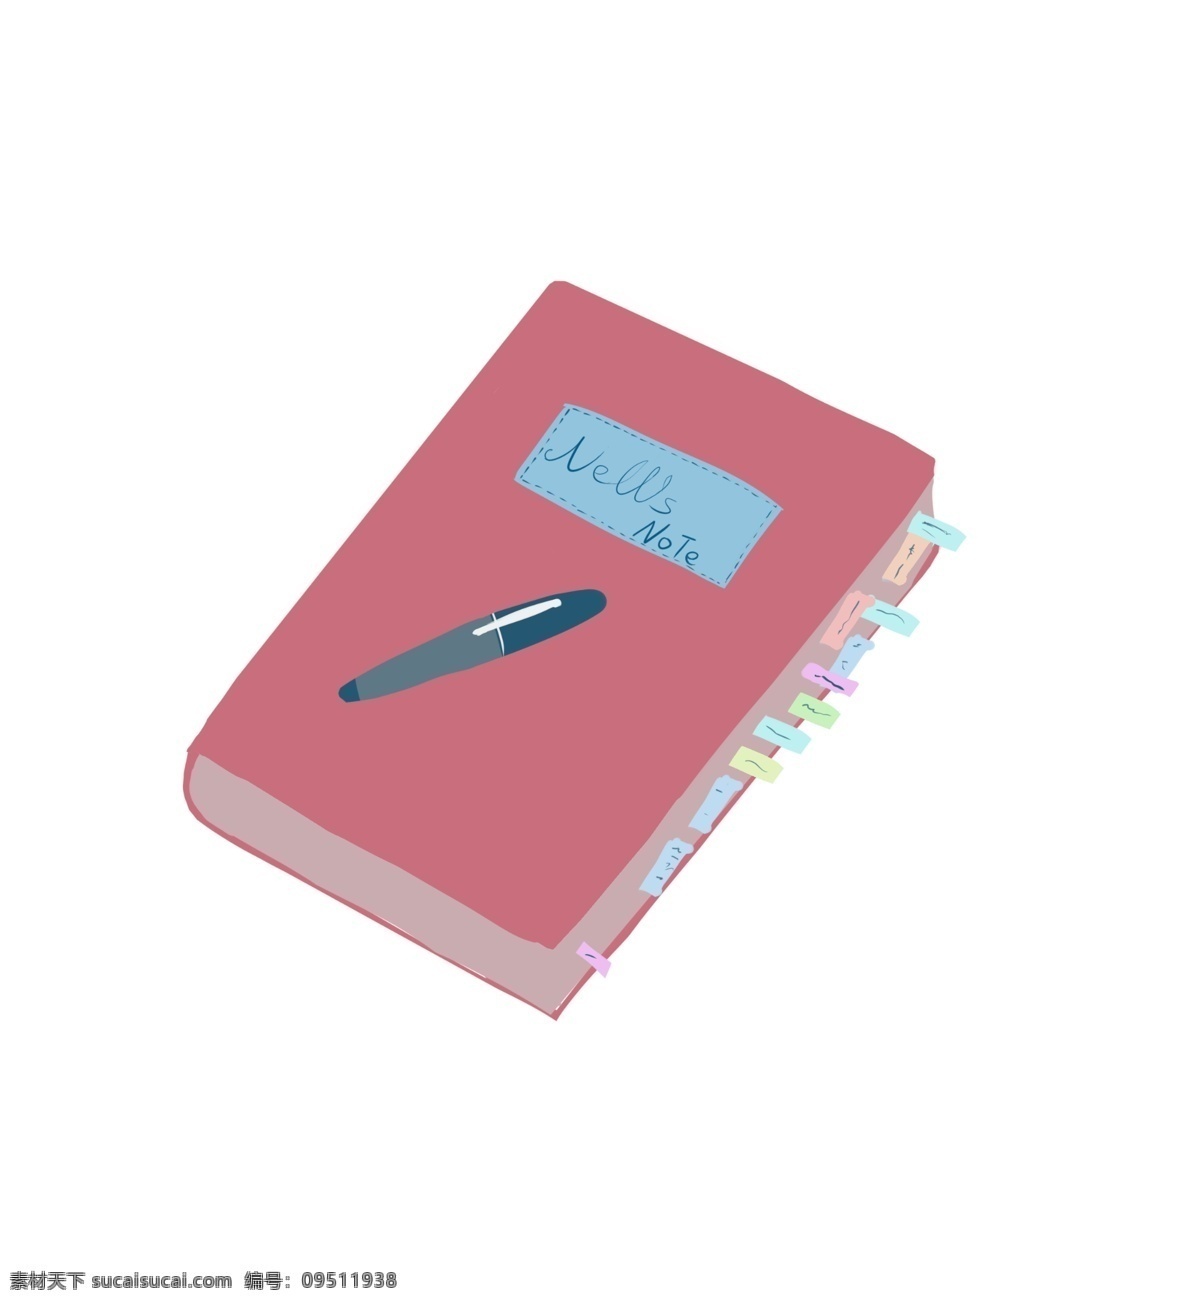 粉色 笔记本 新闻 插图 英文字母 灰色钢笔 粉色笔记本 新闻笔记 彩色标签 生活用品 记录生活 工作用品